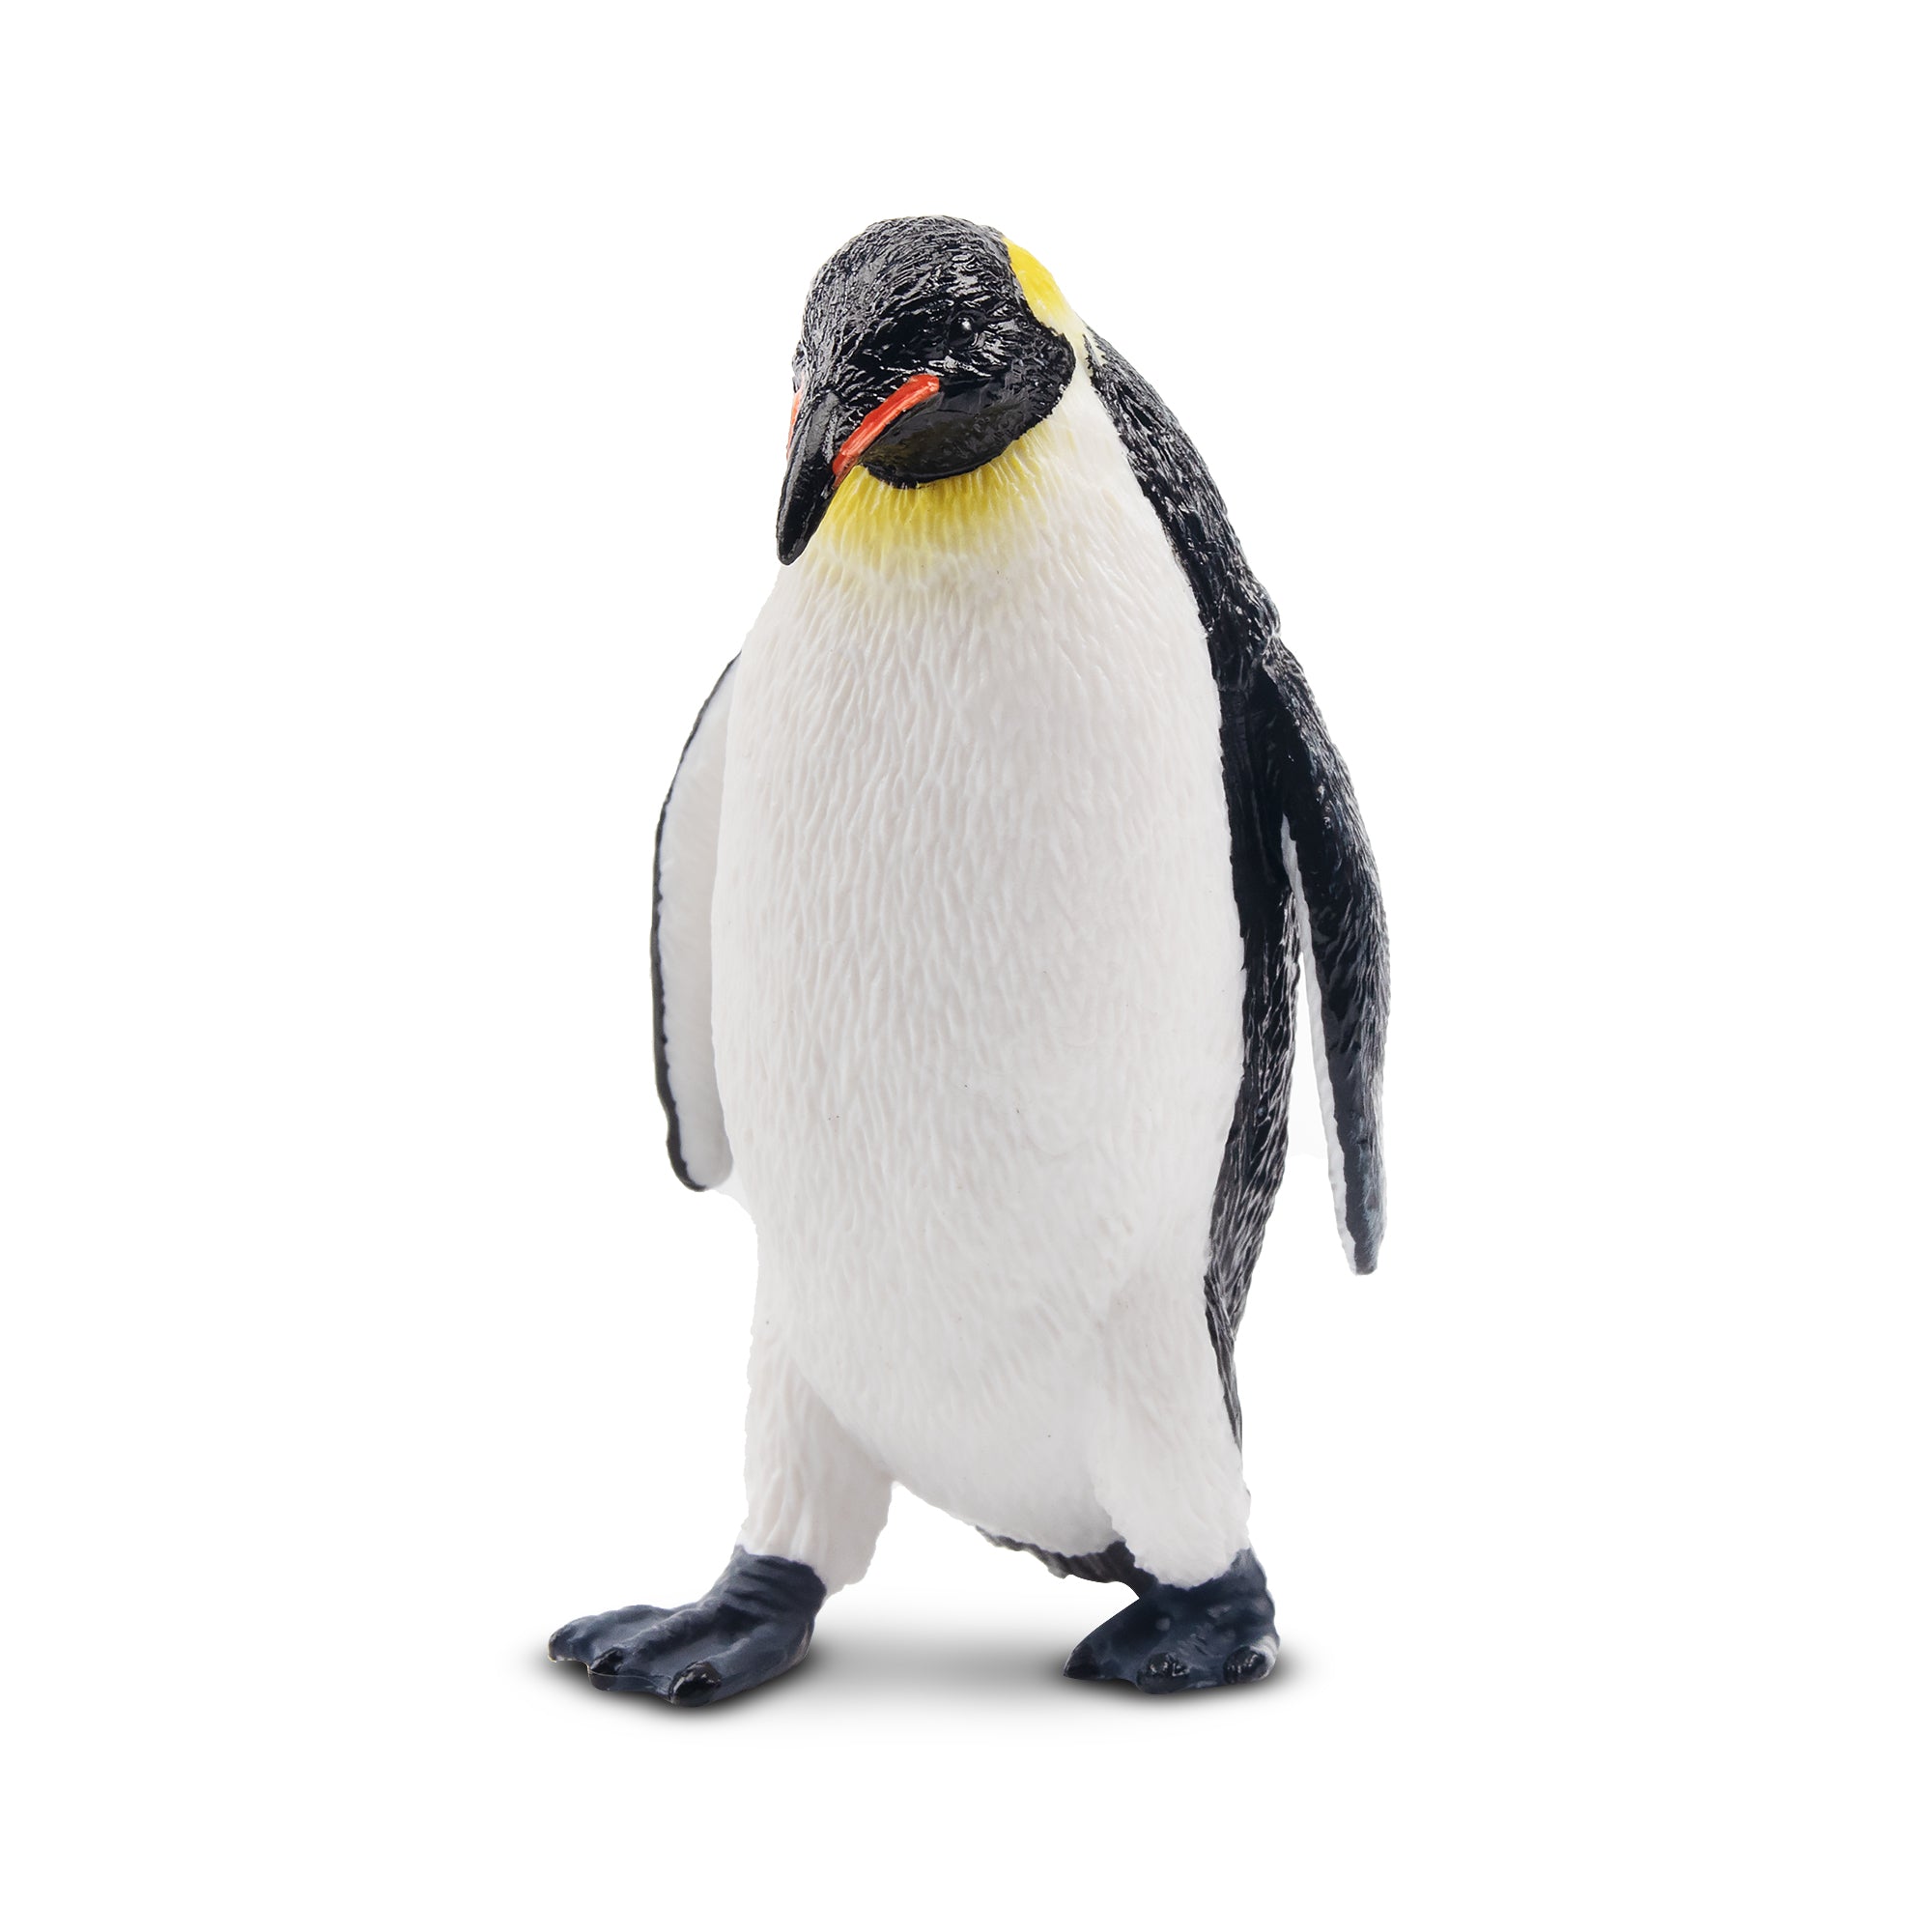 Toymany Emperor Penguin Figurine Toy